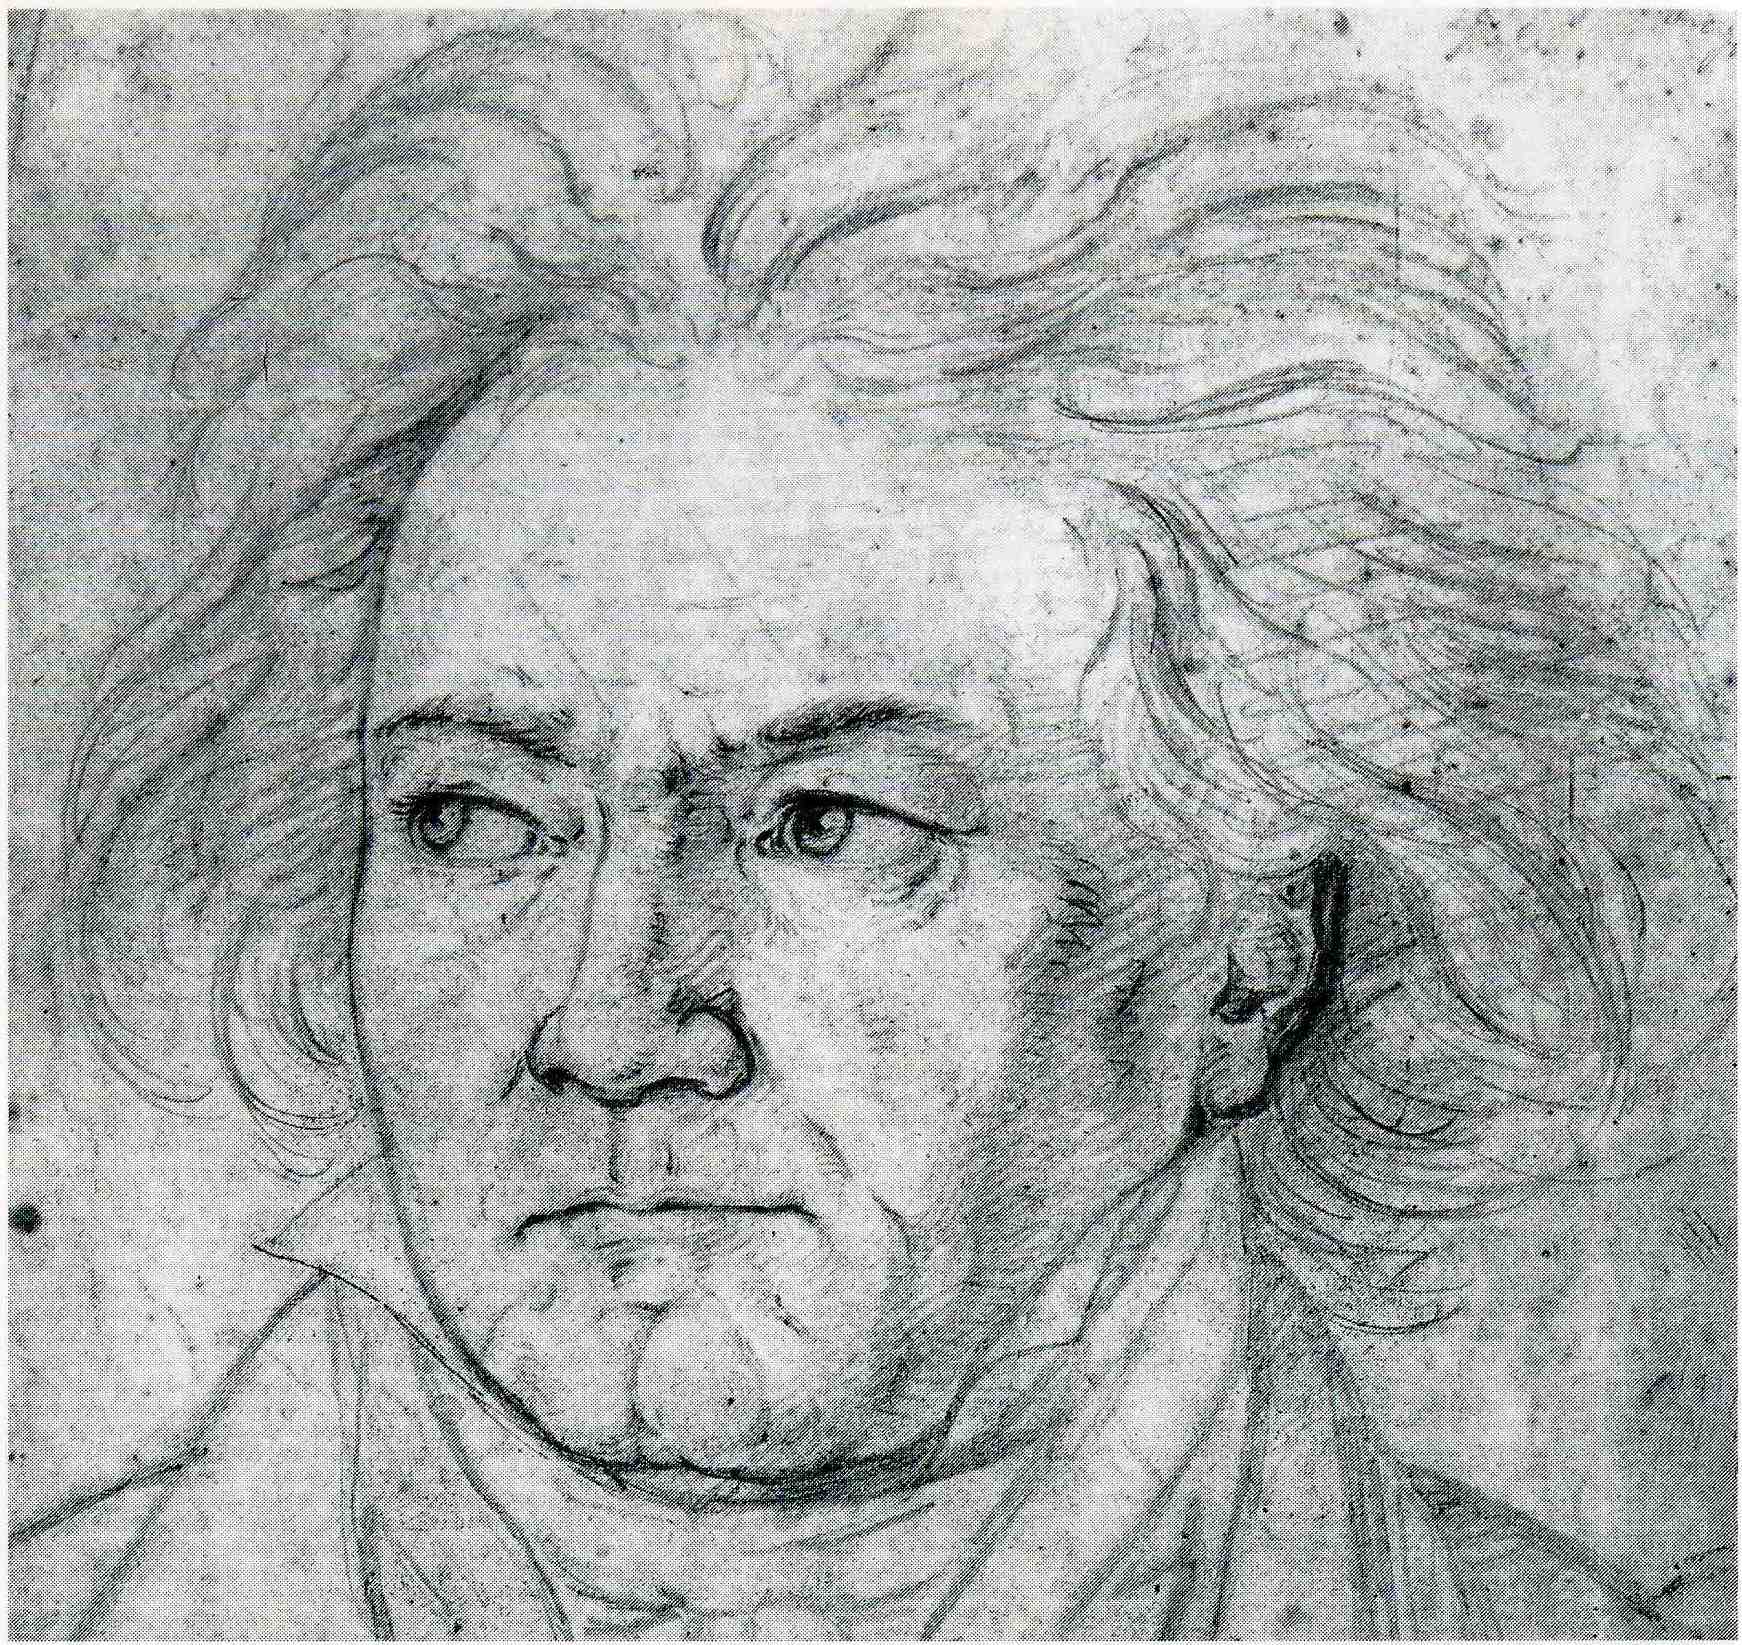 Czarno-biały rysunek głowu mężczyzny z rozwianymi siwymi włosami